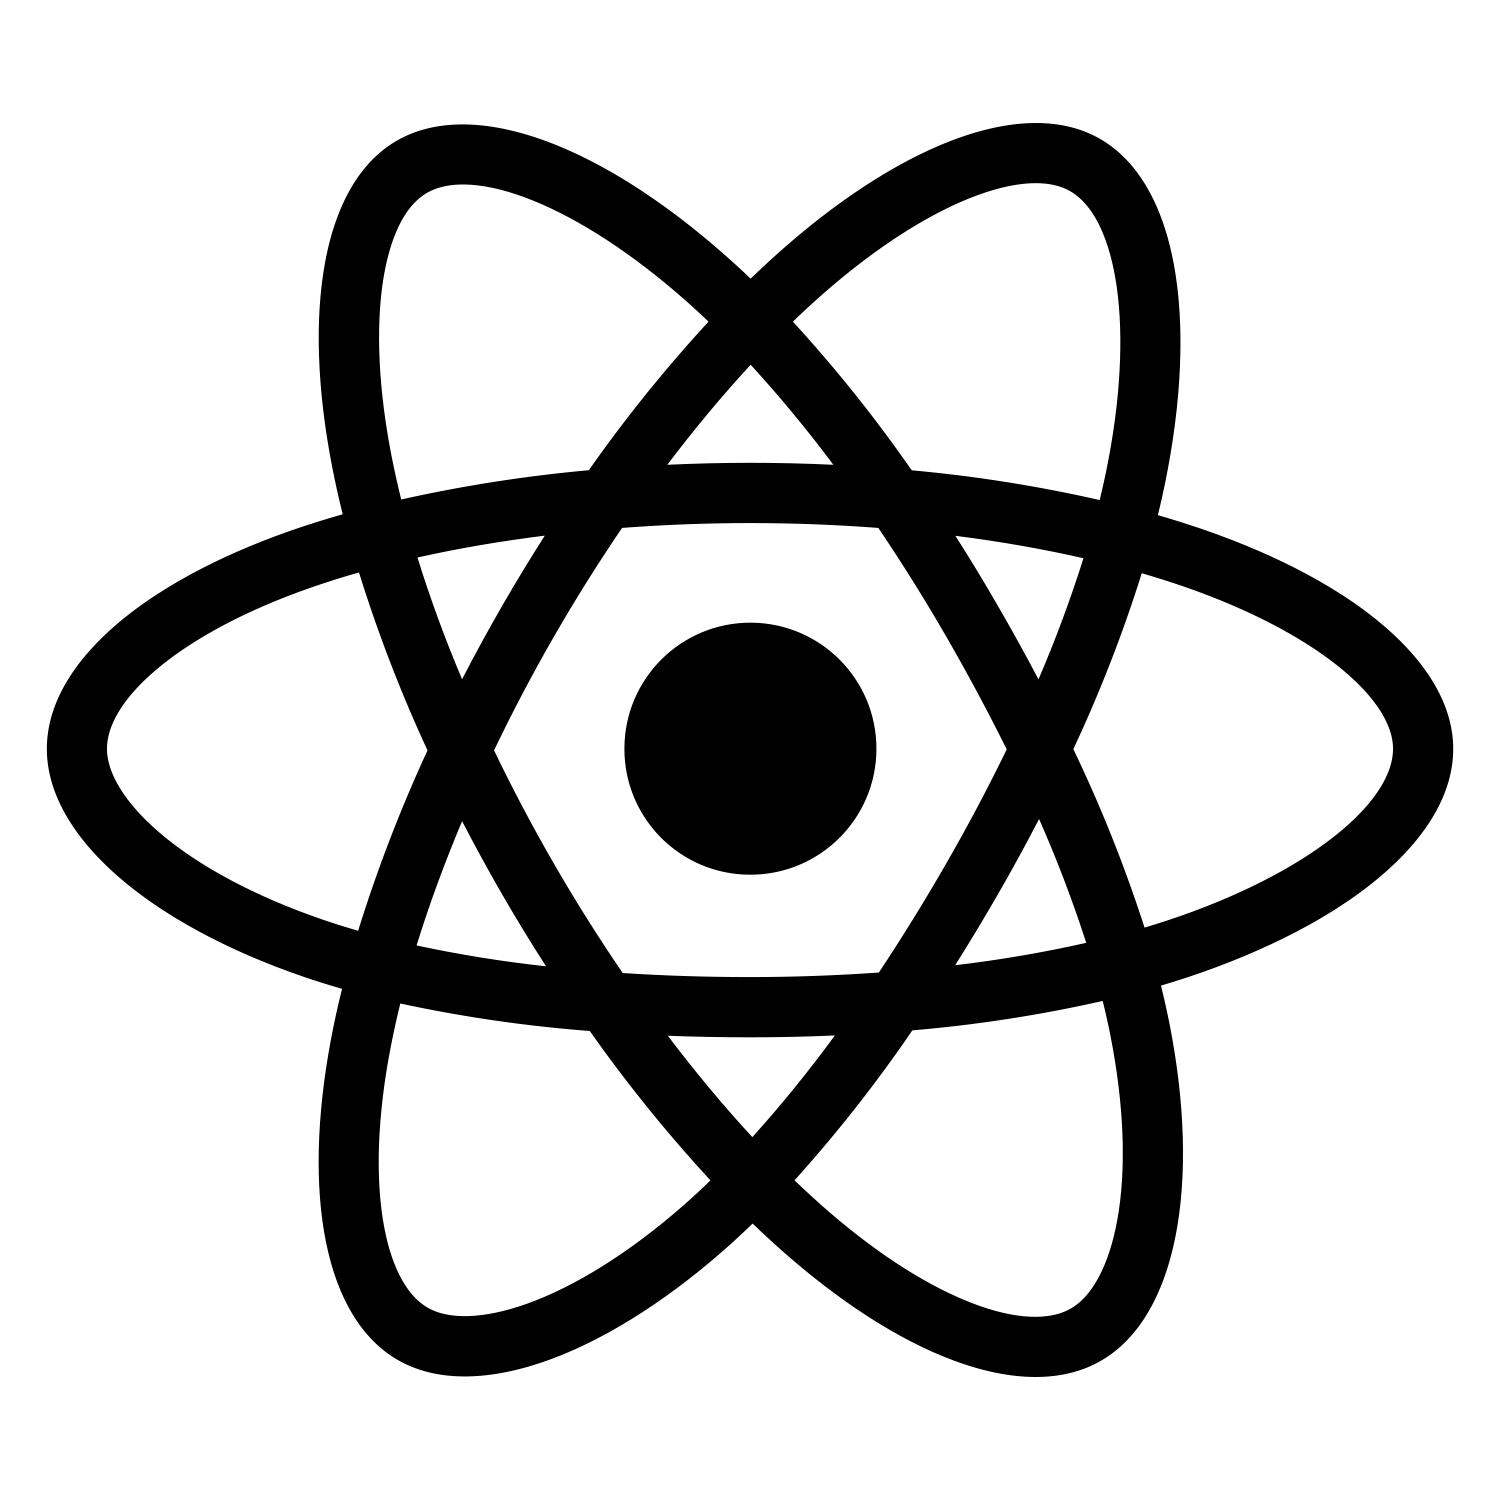 React JS Logo